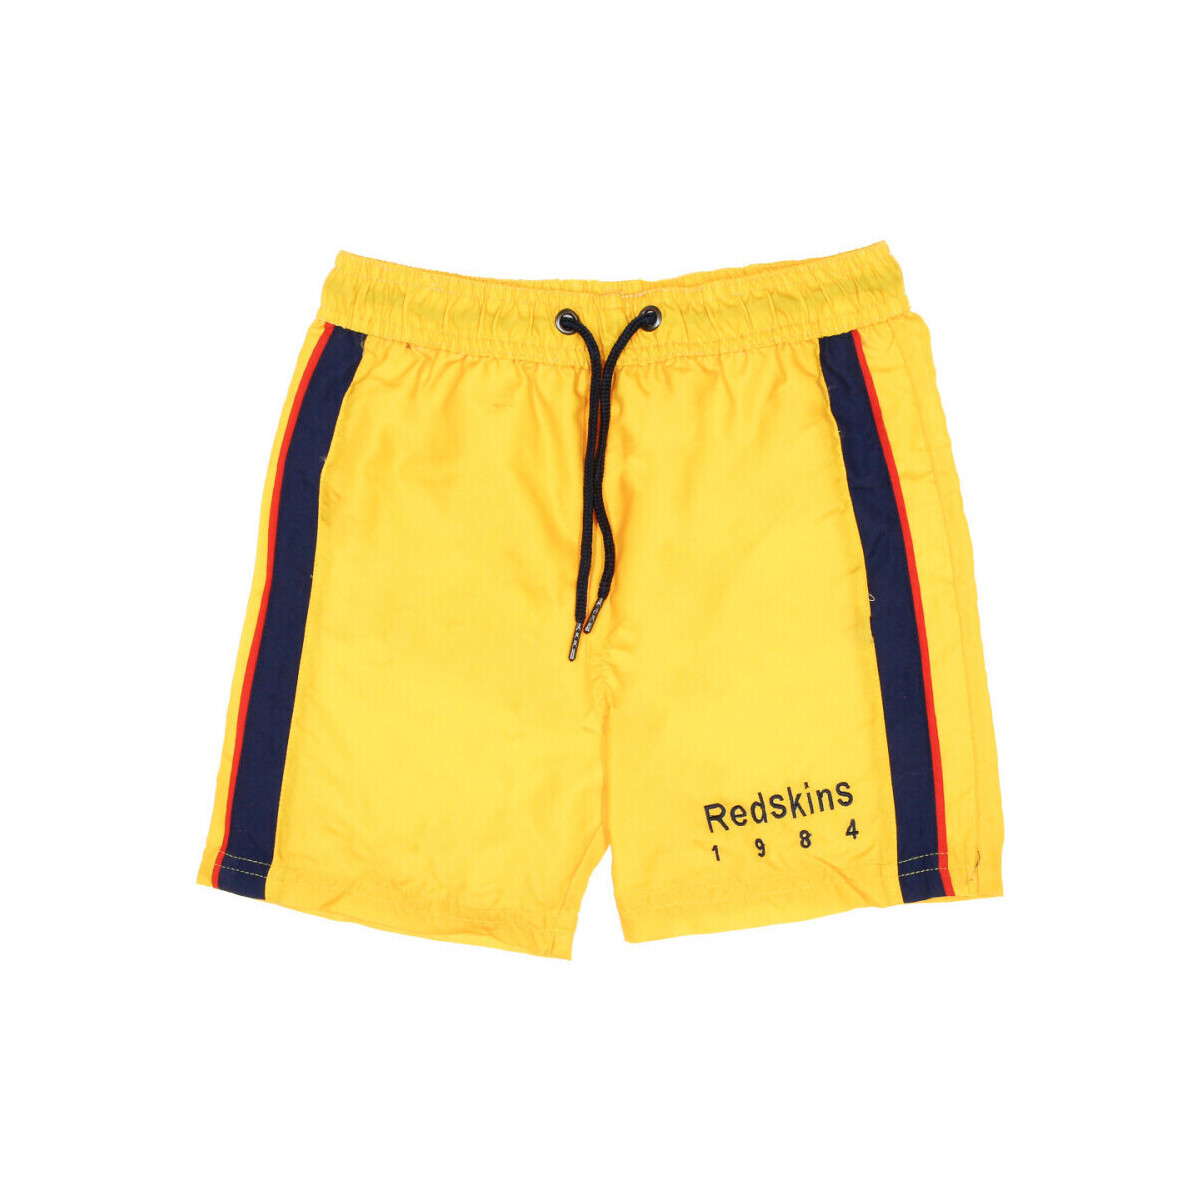 Abbigliamento Bambino Costume / Bermuda da spiaggia Redskins RDS-20289-JR Giallo